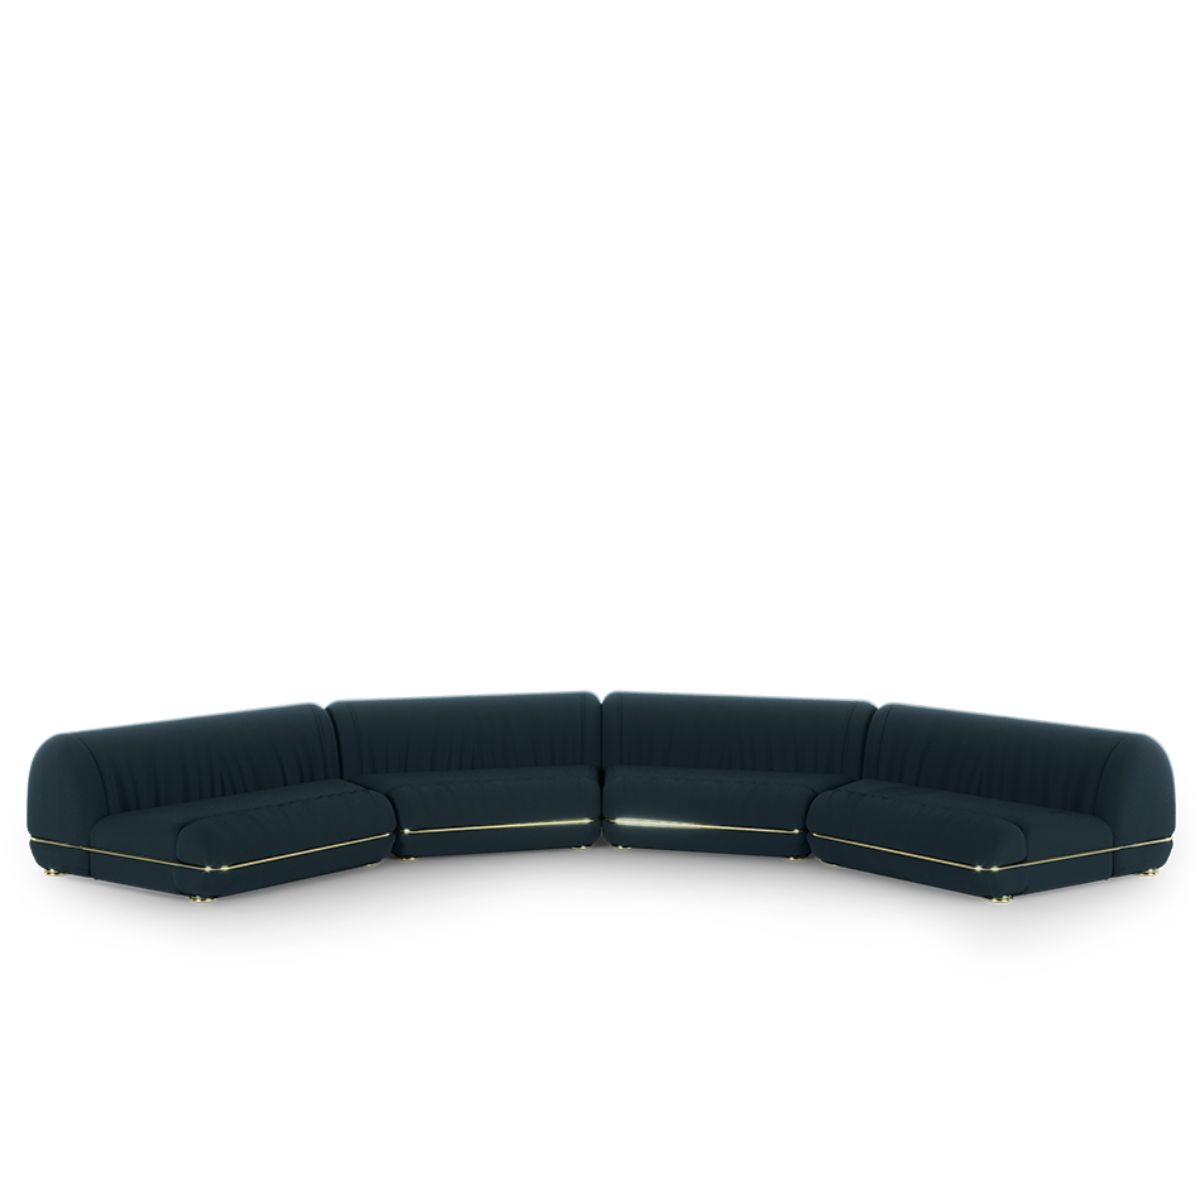 xenon-modular-sofa-essential-home